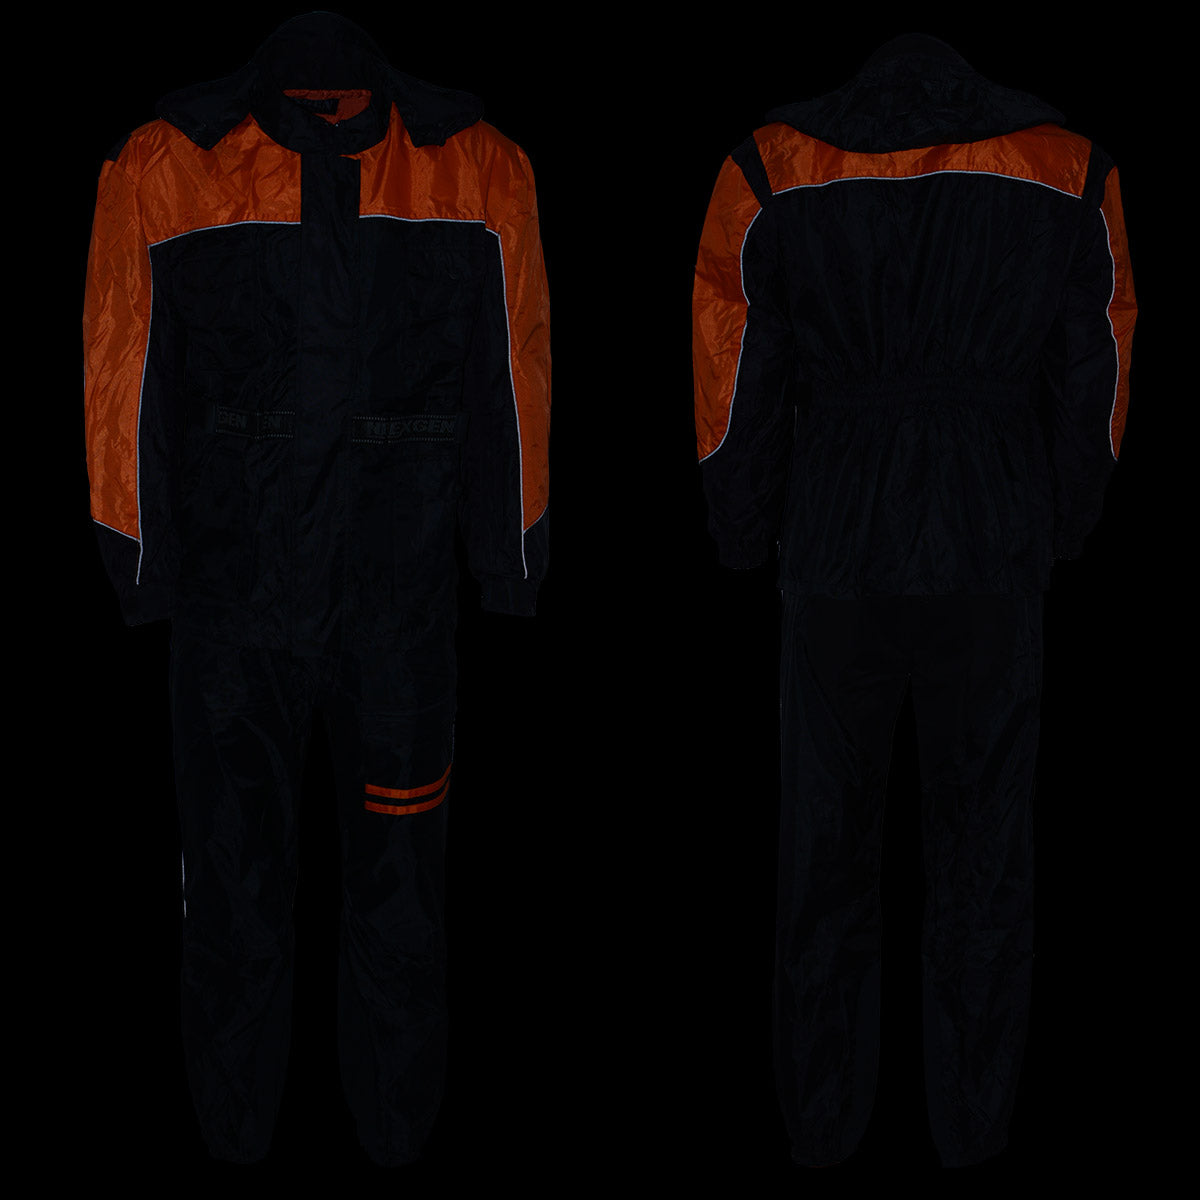 NexGen Men's SH2051 Black and Orange Hooded Water Proof Armored Rain Suit